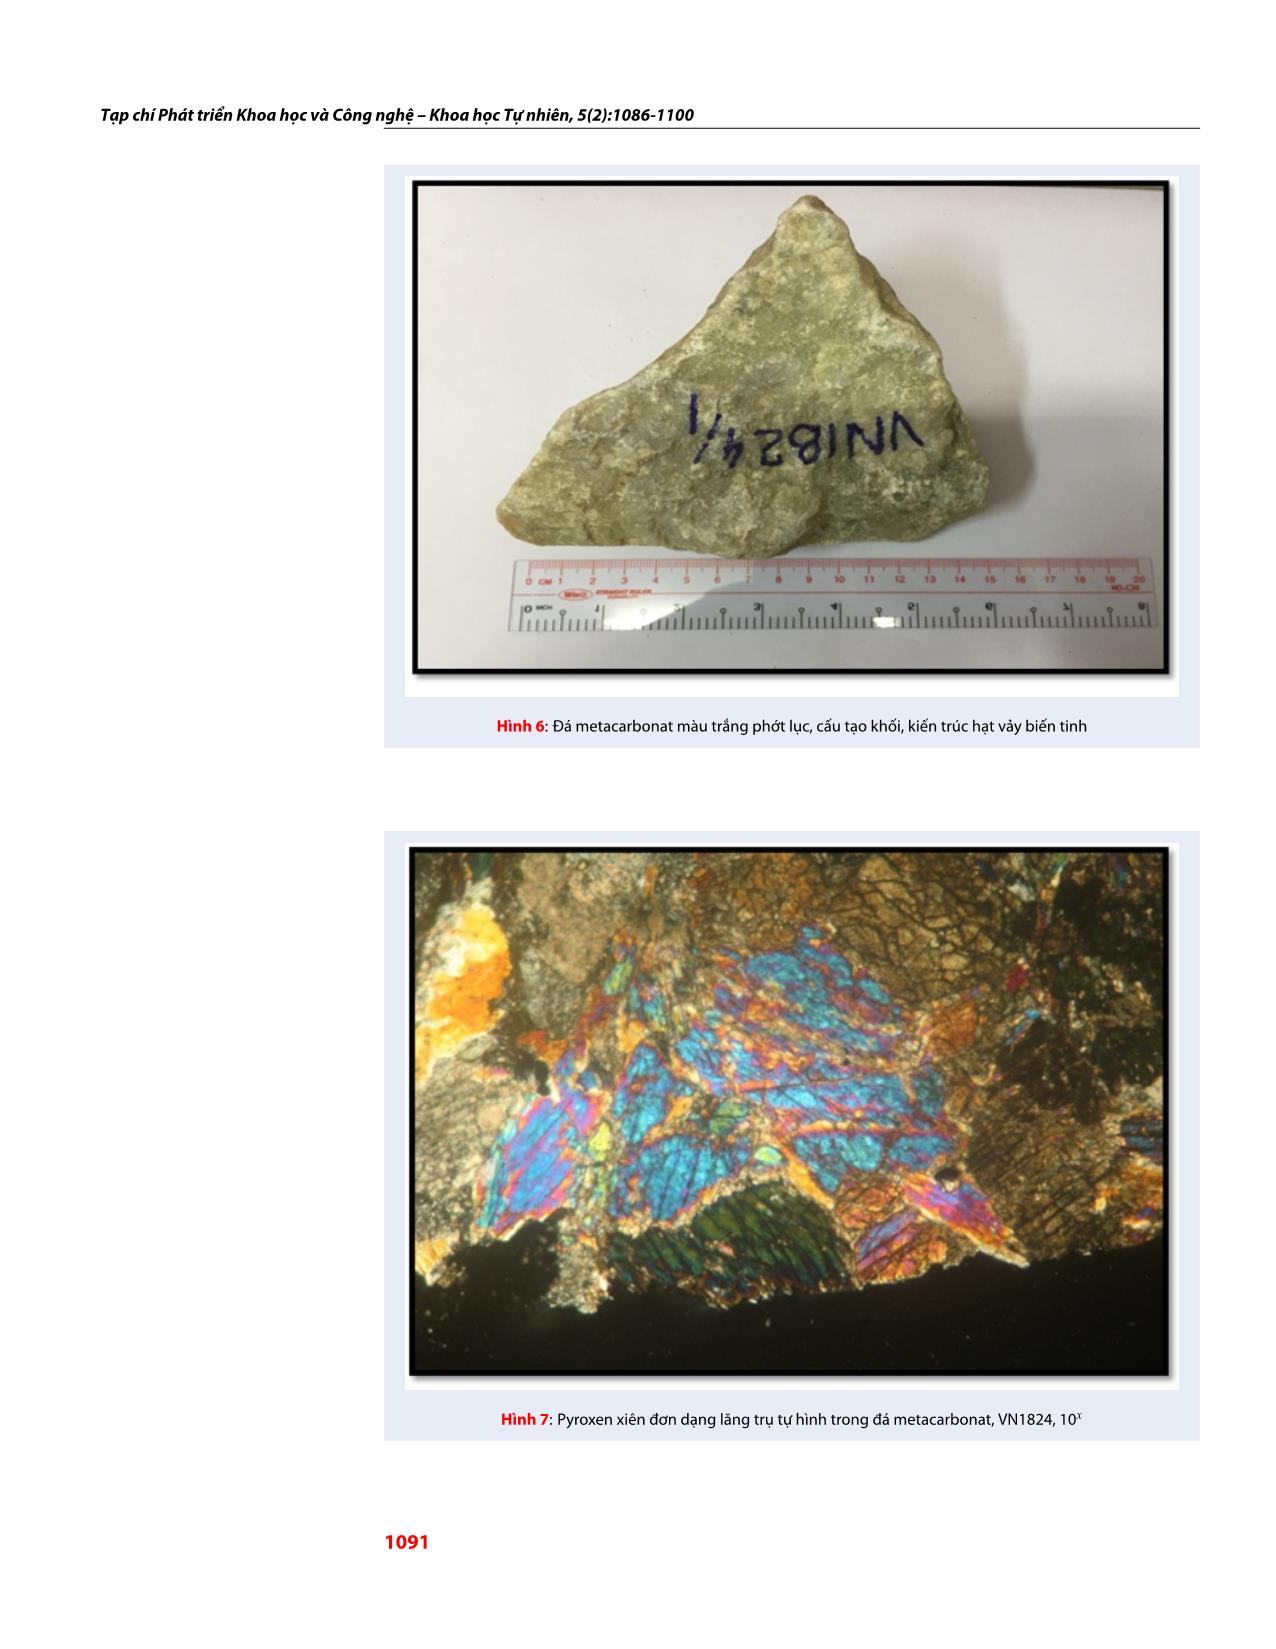 Đặc điểm thành phần khoáng vật trong đá metacarbonat khu vực Sa Thầy, Kon Tum và khả năng ứng dụng của metacarbonat trong đá mỹ nghệ trang 6